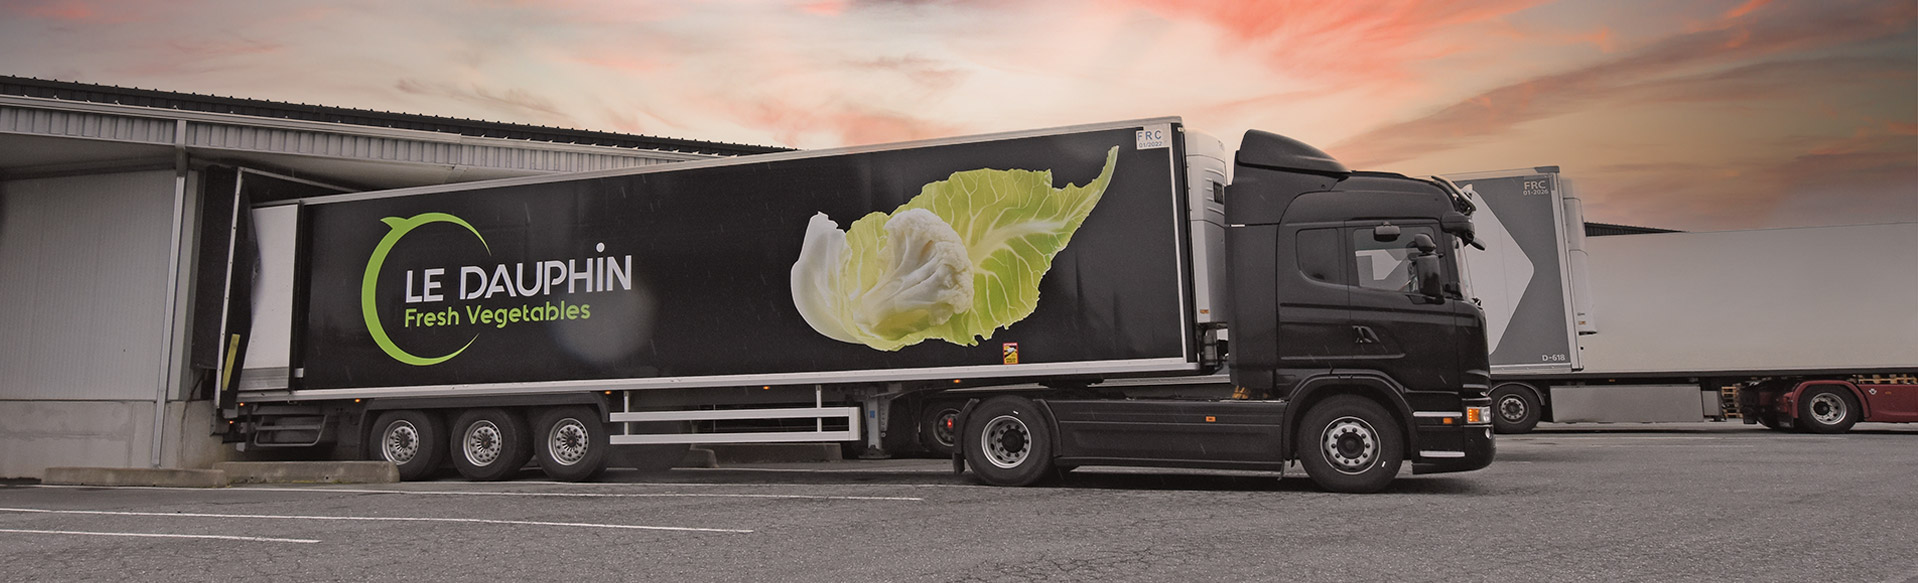 camion le dauphin exportateur de légumes